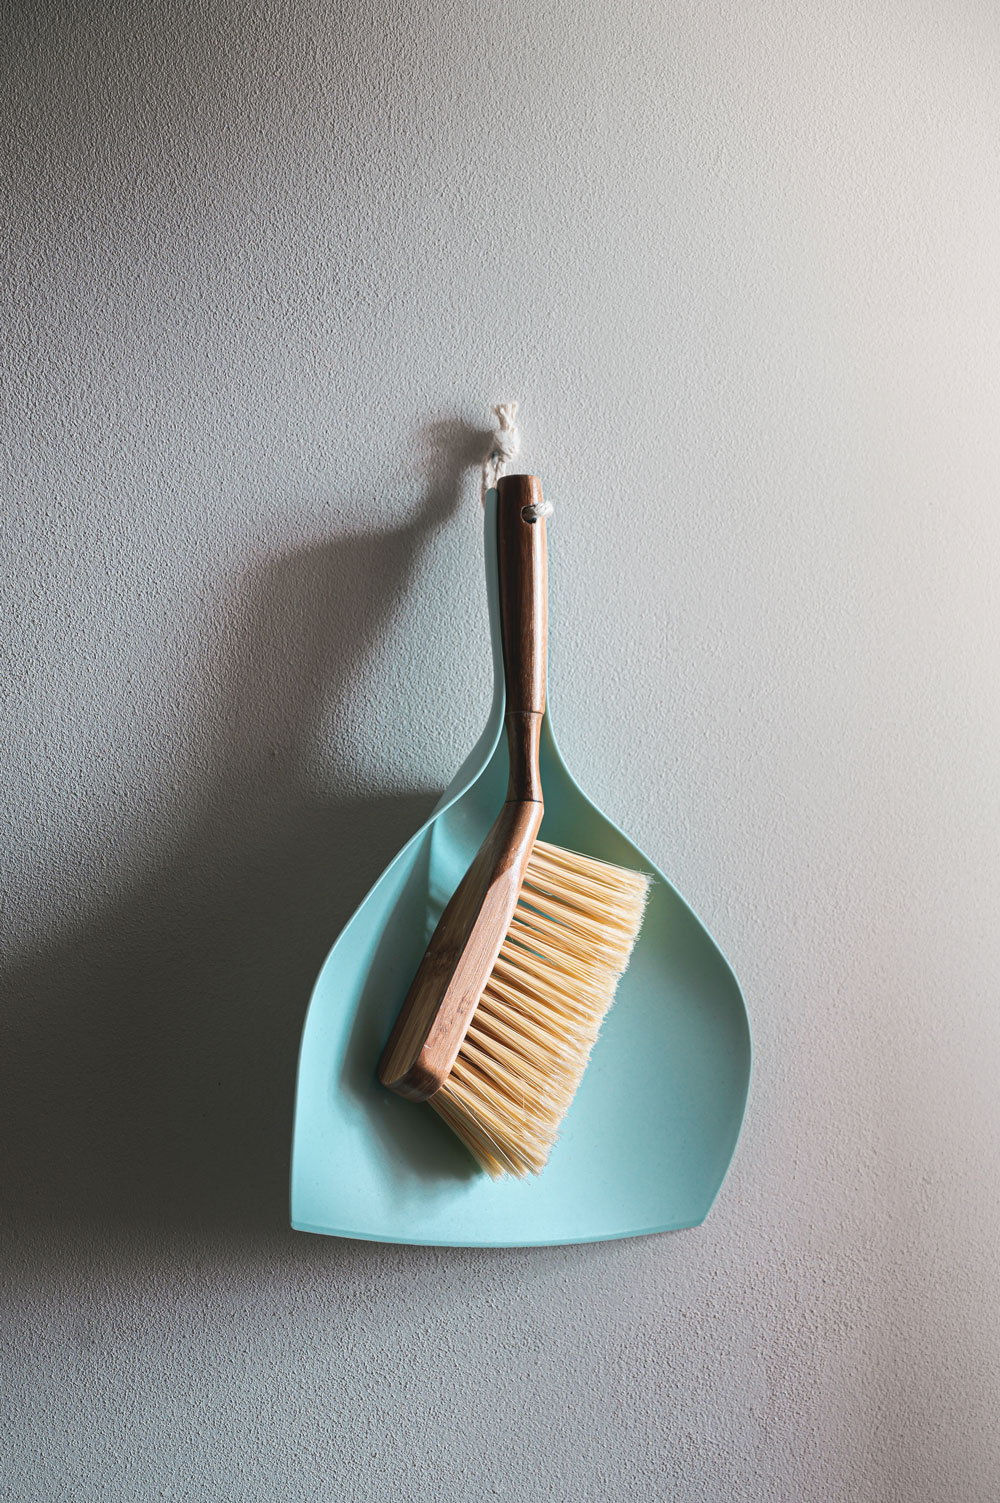 Trucos de limpieza con papel de horno: cómo limpiar tu casa